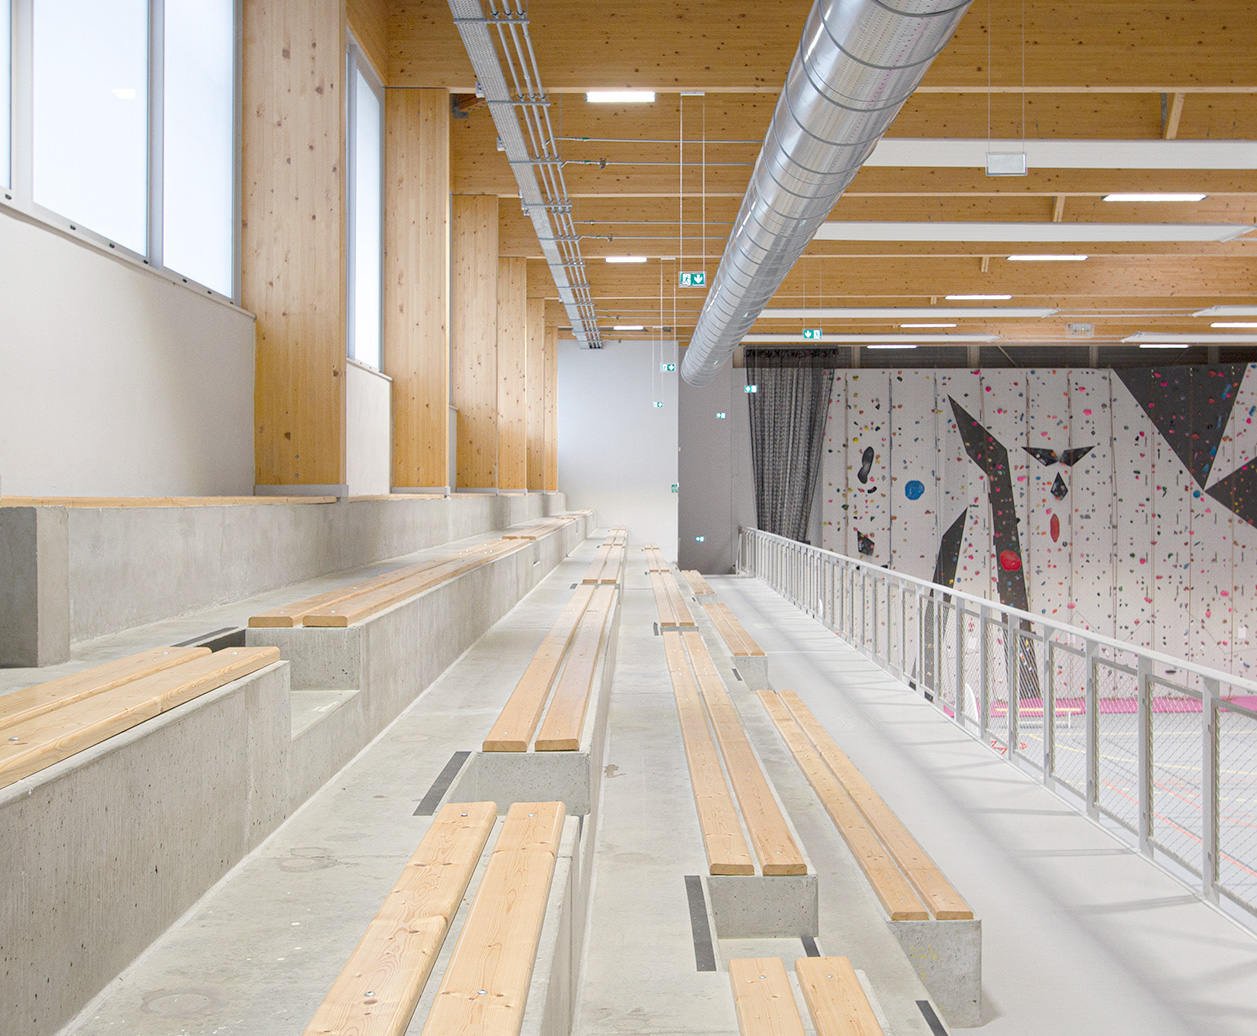 Photographie intérieure depuis les gradins qui surplombent les terrains de sport, gradins béton et bois, au plafond poutres bois traversantes apparentes